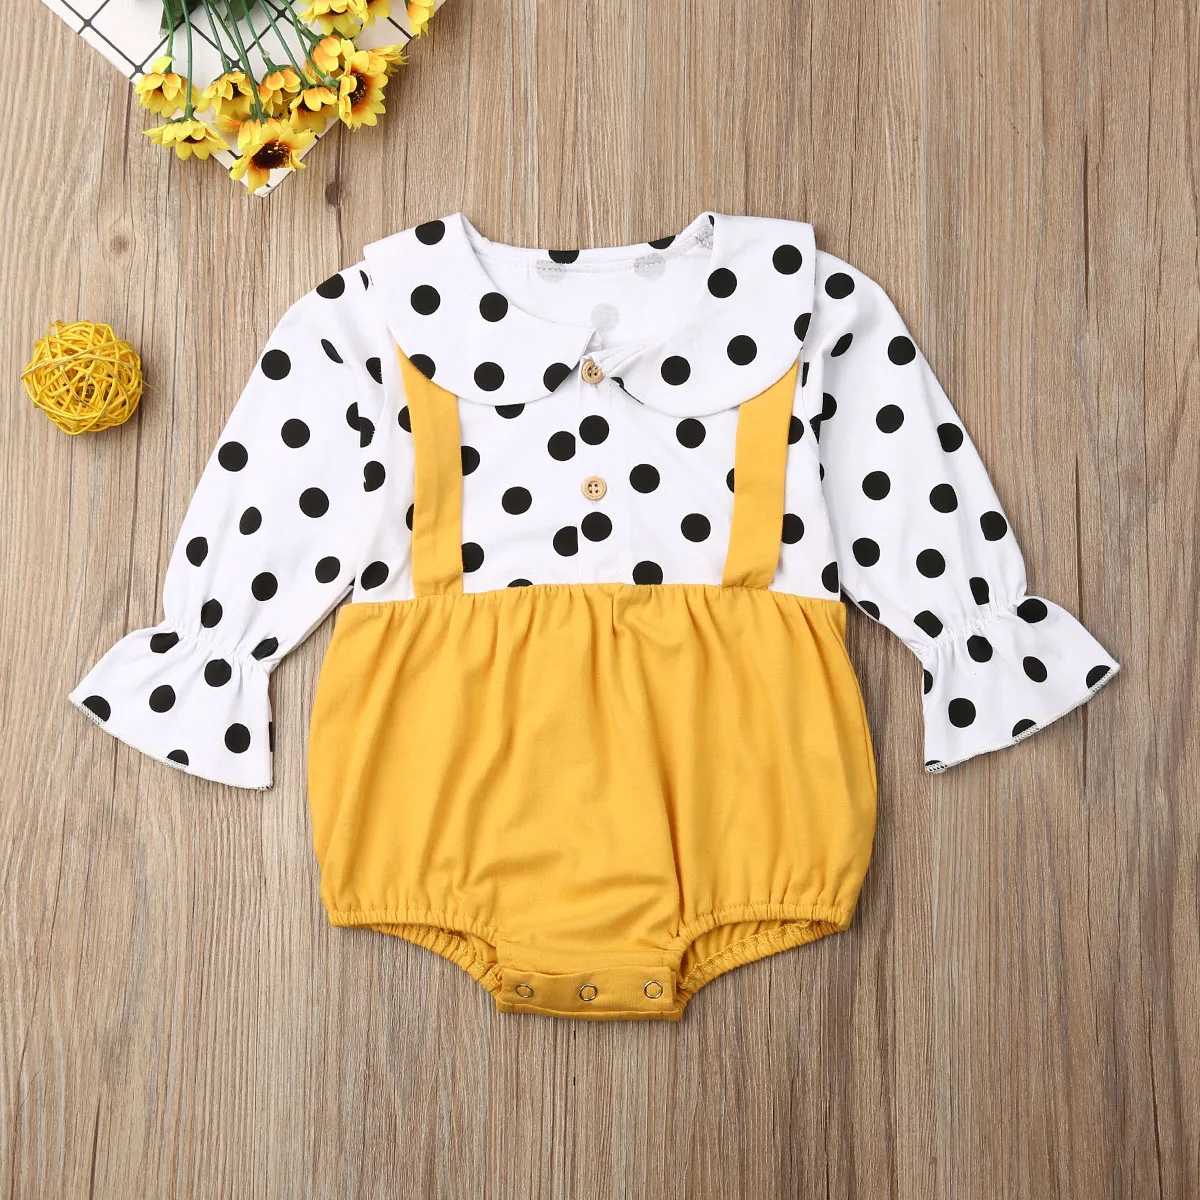 Комбинезон в горошек с длинными рукавами для новорожденных девочек, спортивный костюм комбинезон, одежда для детей от 0 до 18 месяцев - Цвет: Цвет: желтый